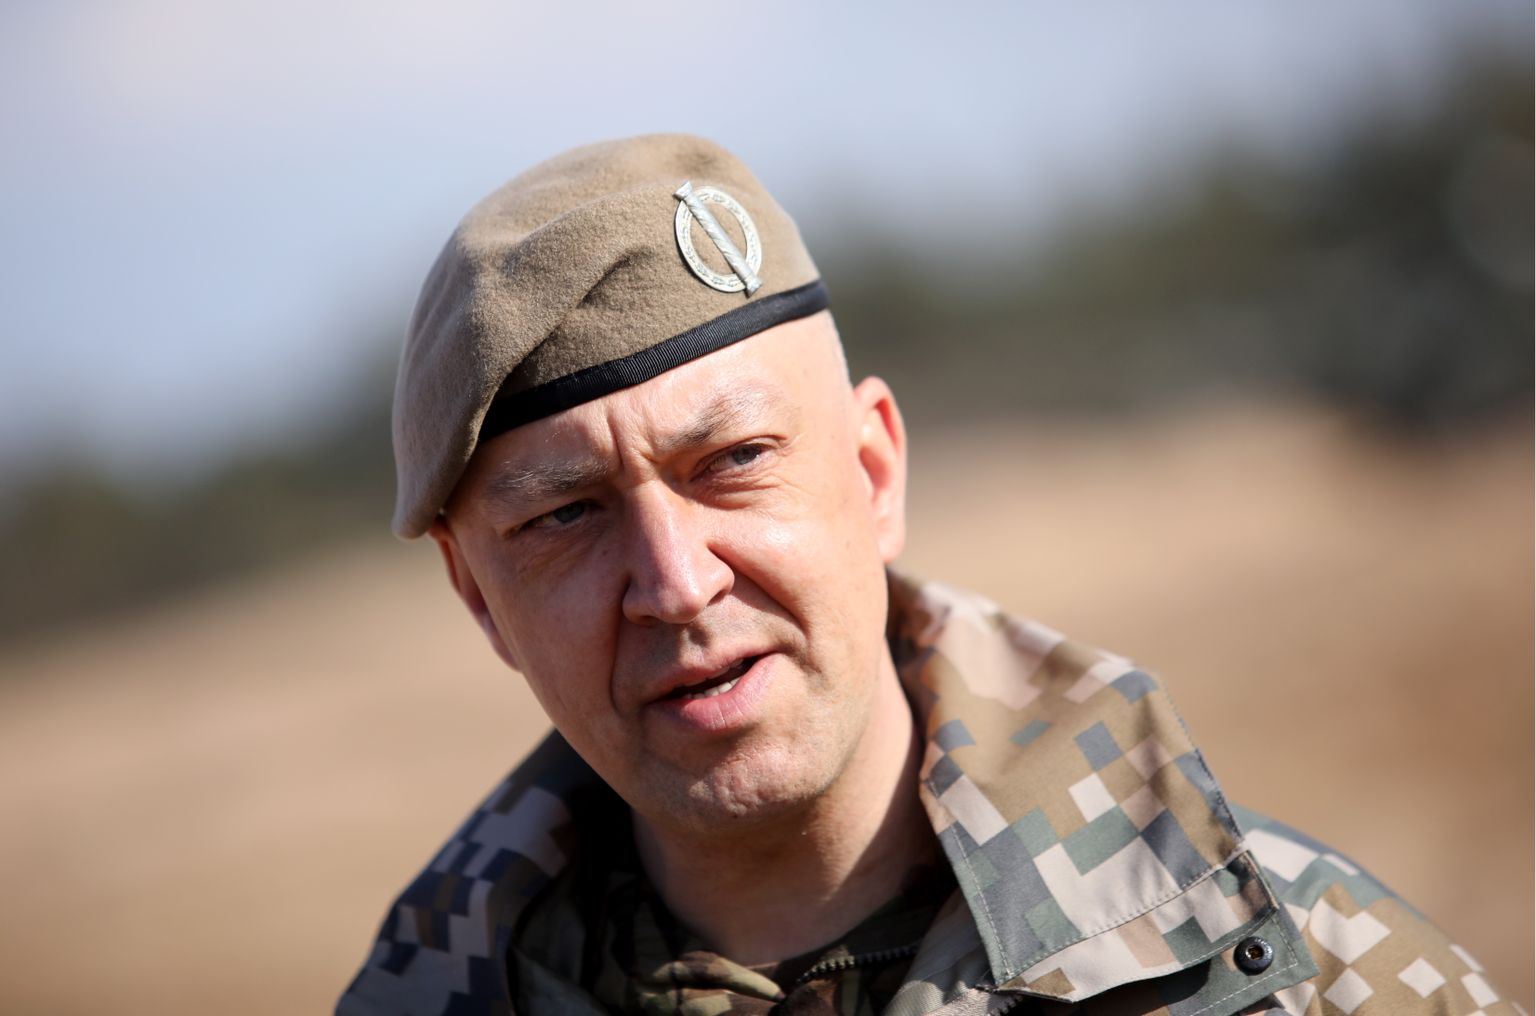 Nacionālo bruņoto spēku Sauszemes spēku Mehanizētās kājnieku brigādes komandieris pulkvedis Sandris Gaugers starptautisko militāro mācību "Kristāla bulta 2021" laikā Ādažu poligonā.